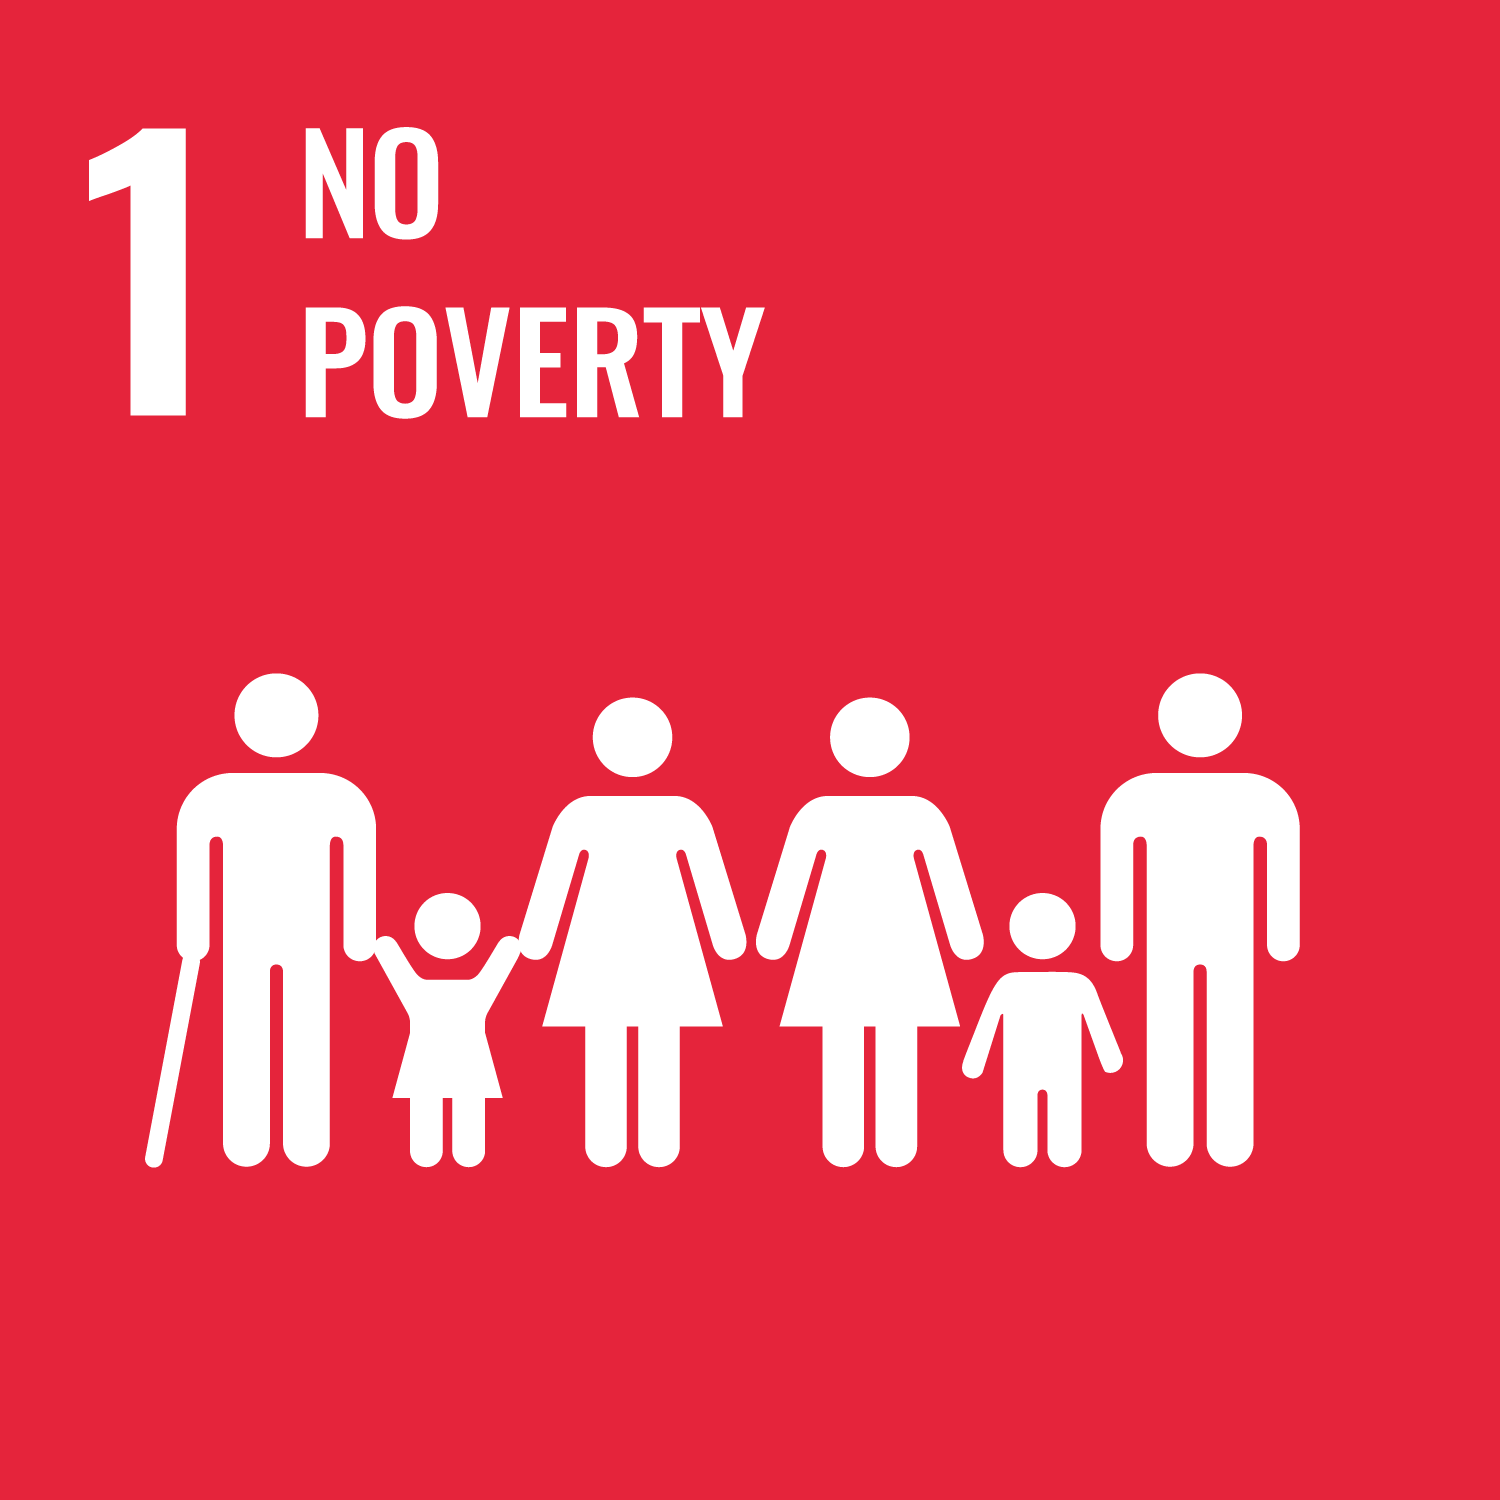 Sustainable Development Goal: SDG 1 "No Poverty"